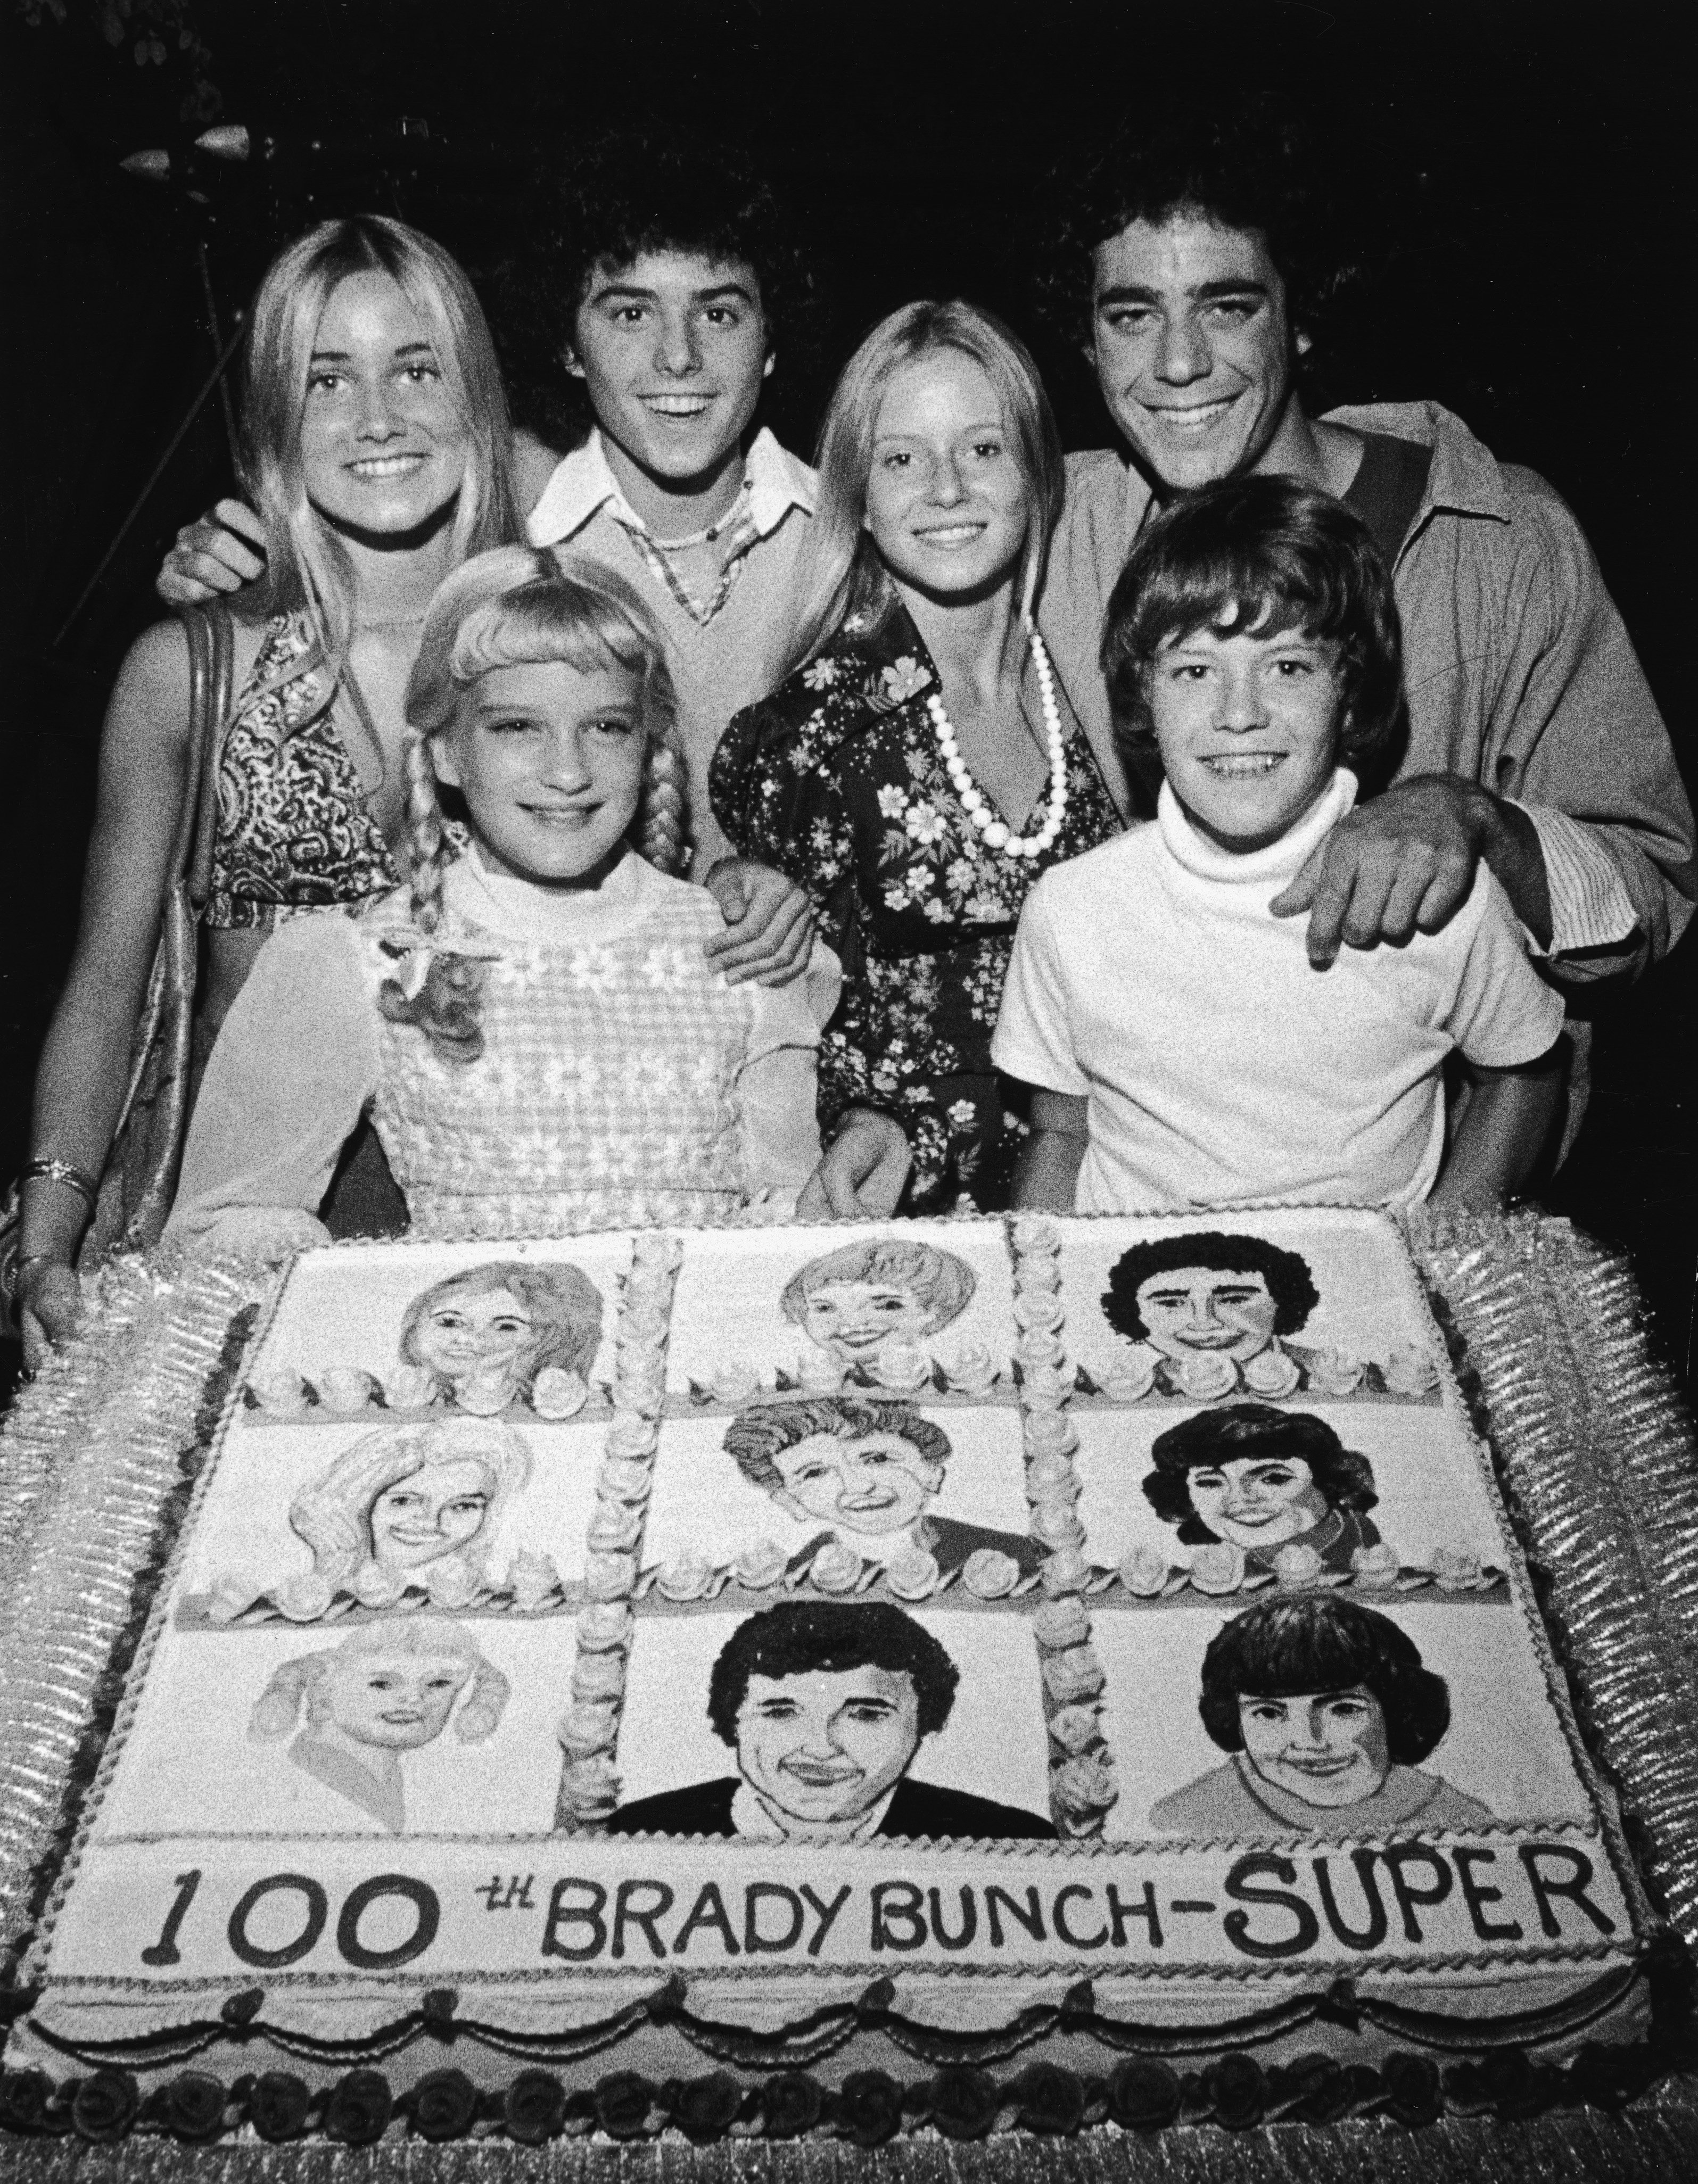 De jeunes acteurs de la série télévisée "The Brady Bunch" posent avec un gâteau célébrant le 100e épisode de la série, vers 1973. (DE GAUCHE À DROITE) : Maureen McCormick, Susan Olsen, Christopher Knight, Eve Plumb, Barry Williams et Mike Lookinland. | Source : Getty Images